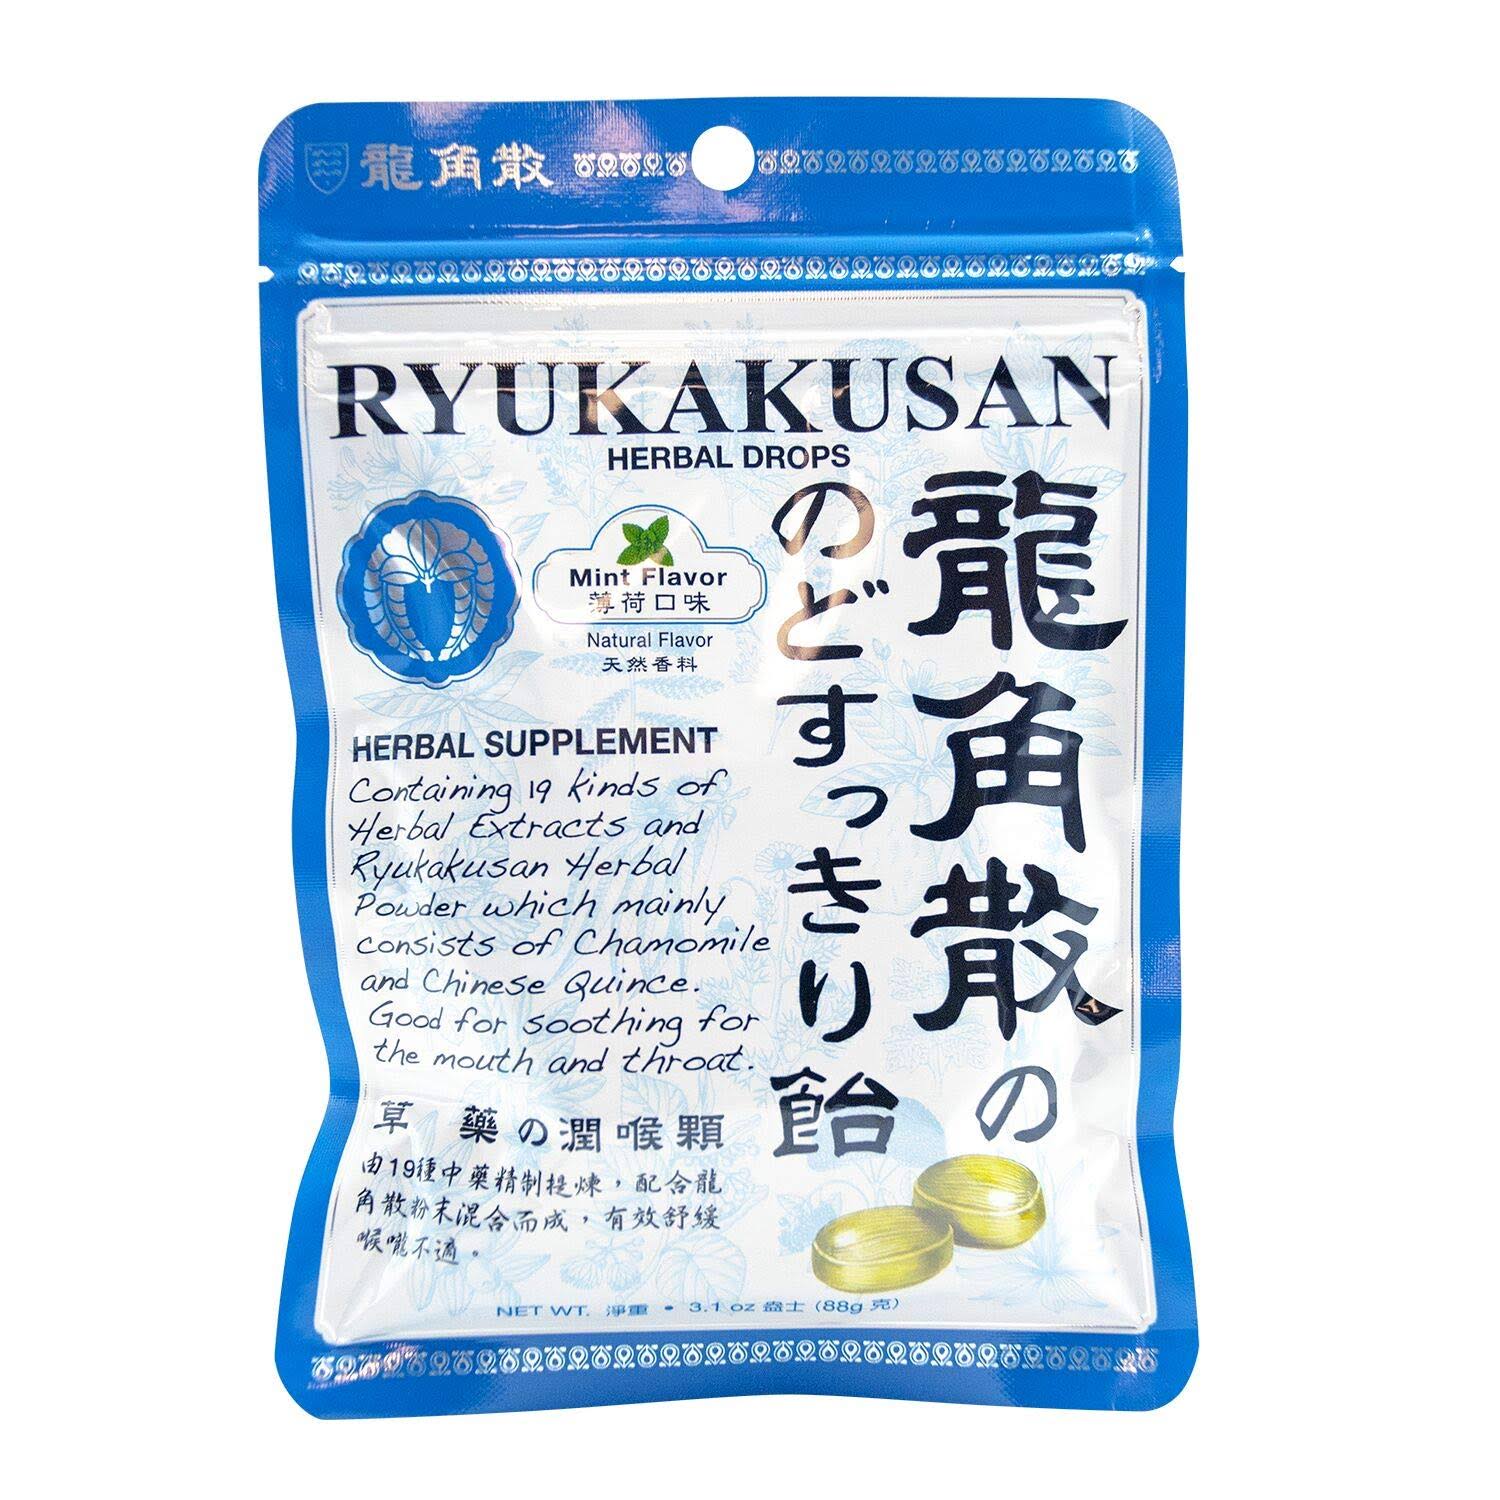 Ryukakusan Herbal Drop Bag Type - Mint, 32pc, 88g